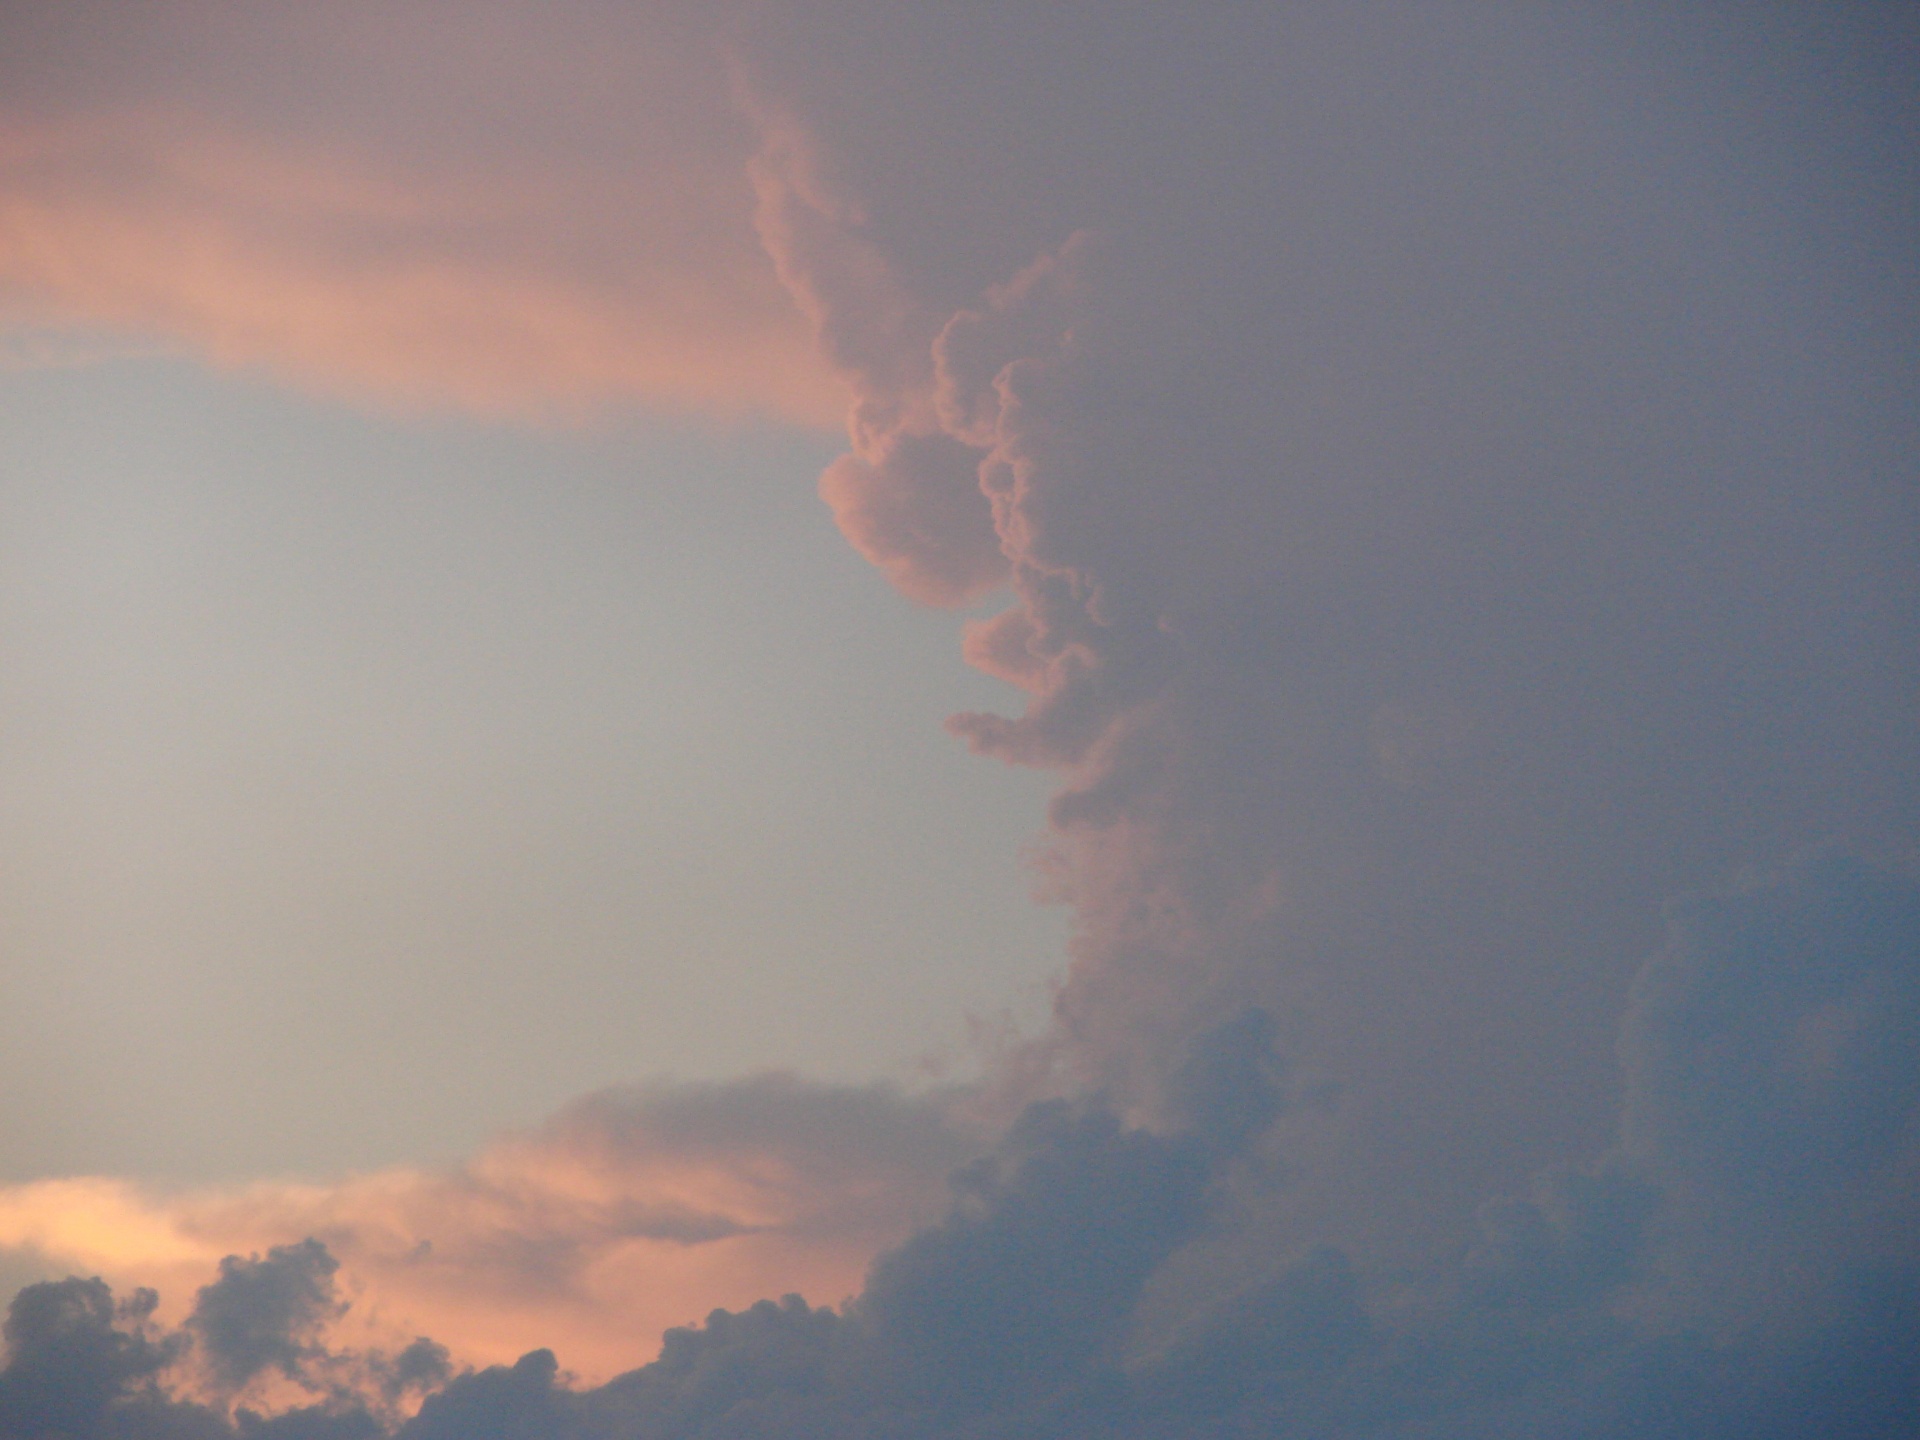 Thunderhead Cloud Detail